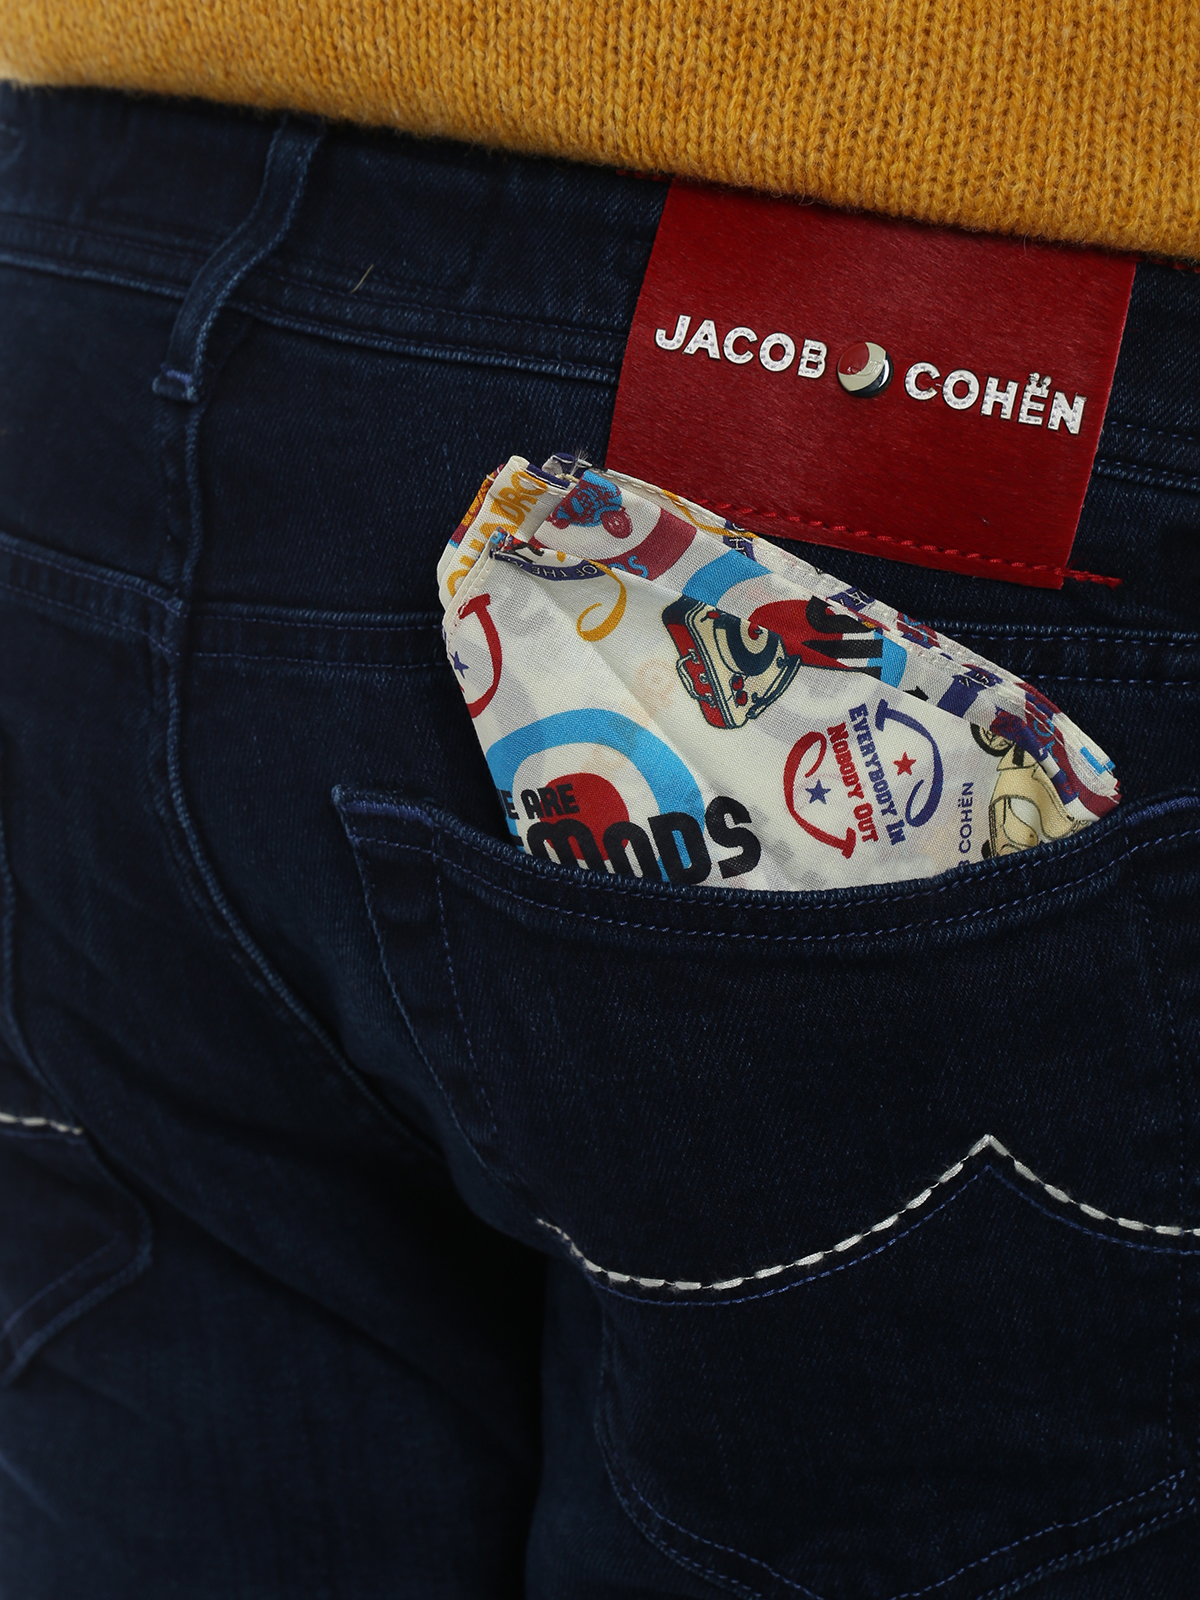 jacob cohen jeans 688